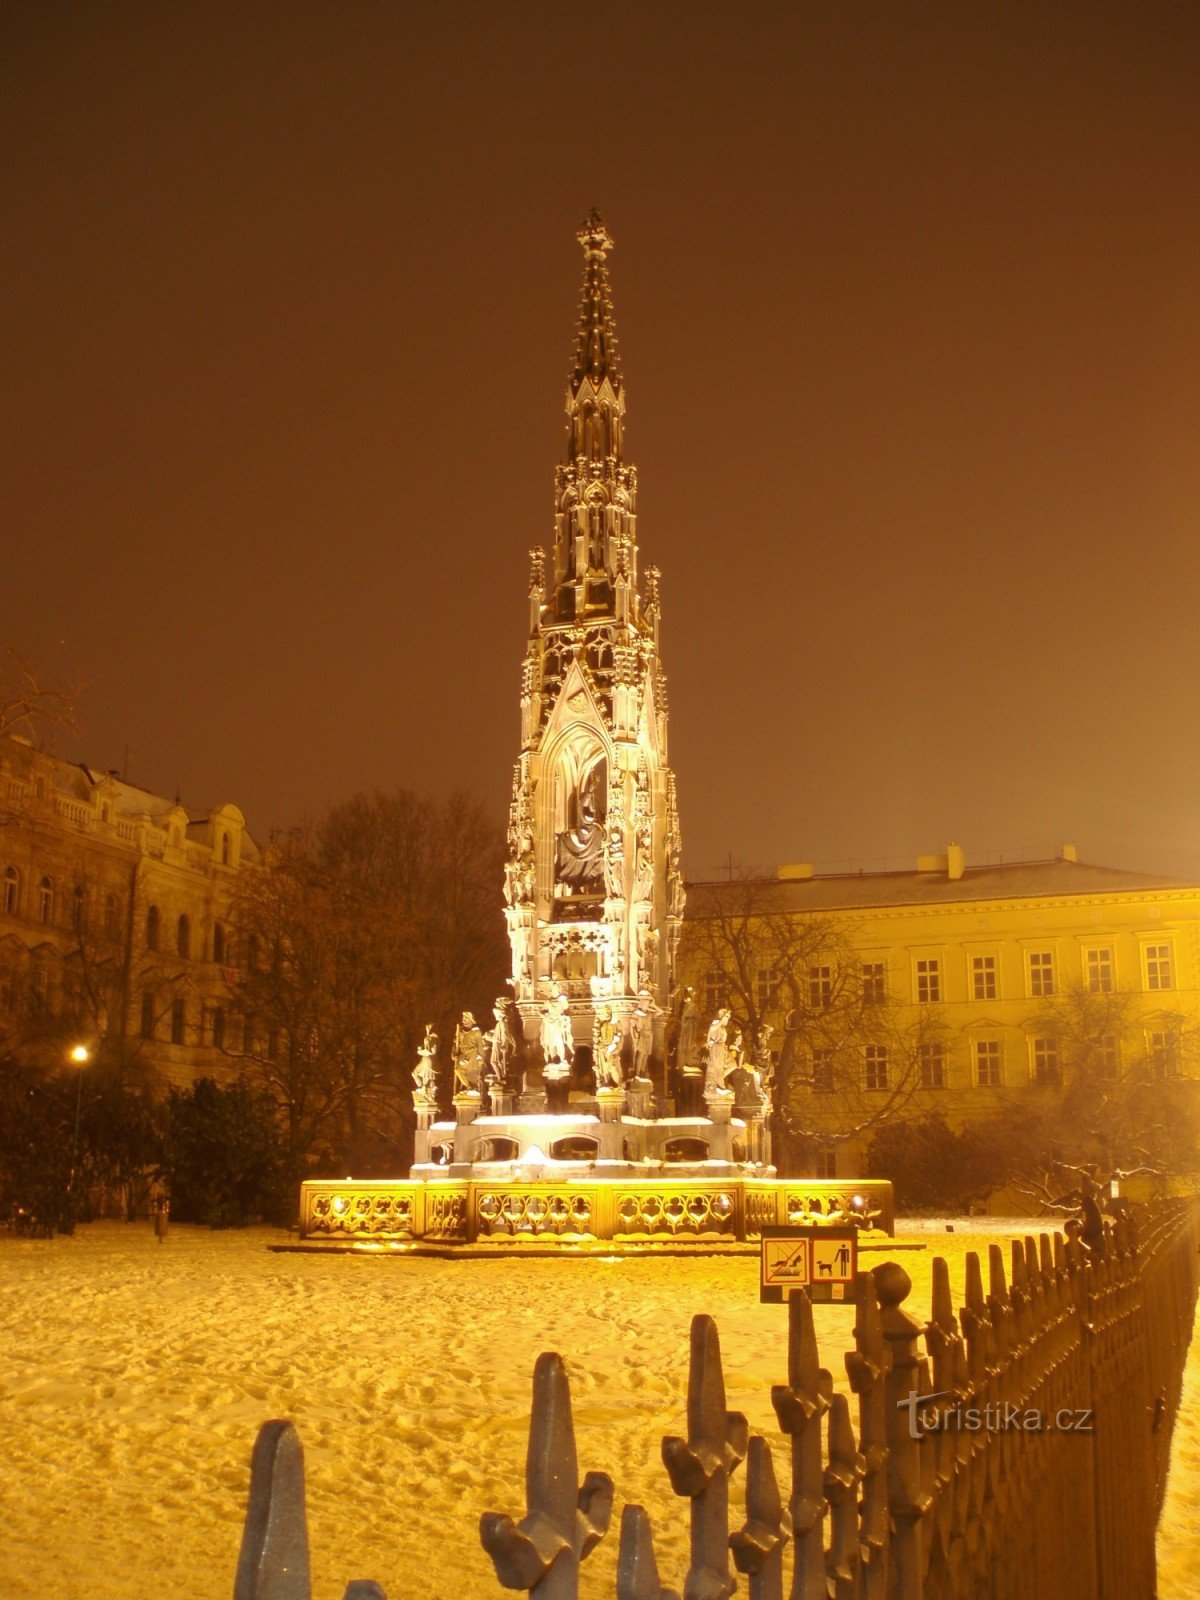 Kranerova fontana